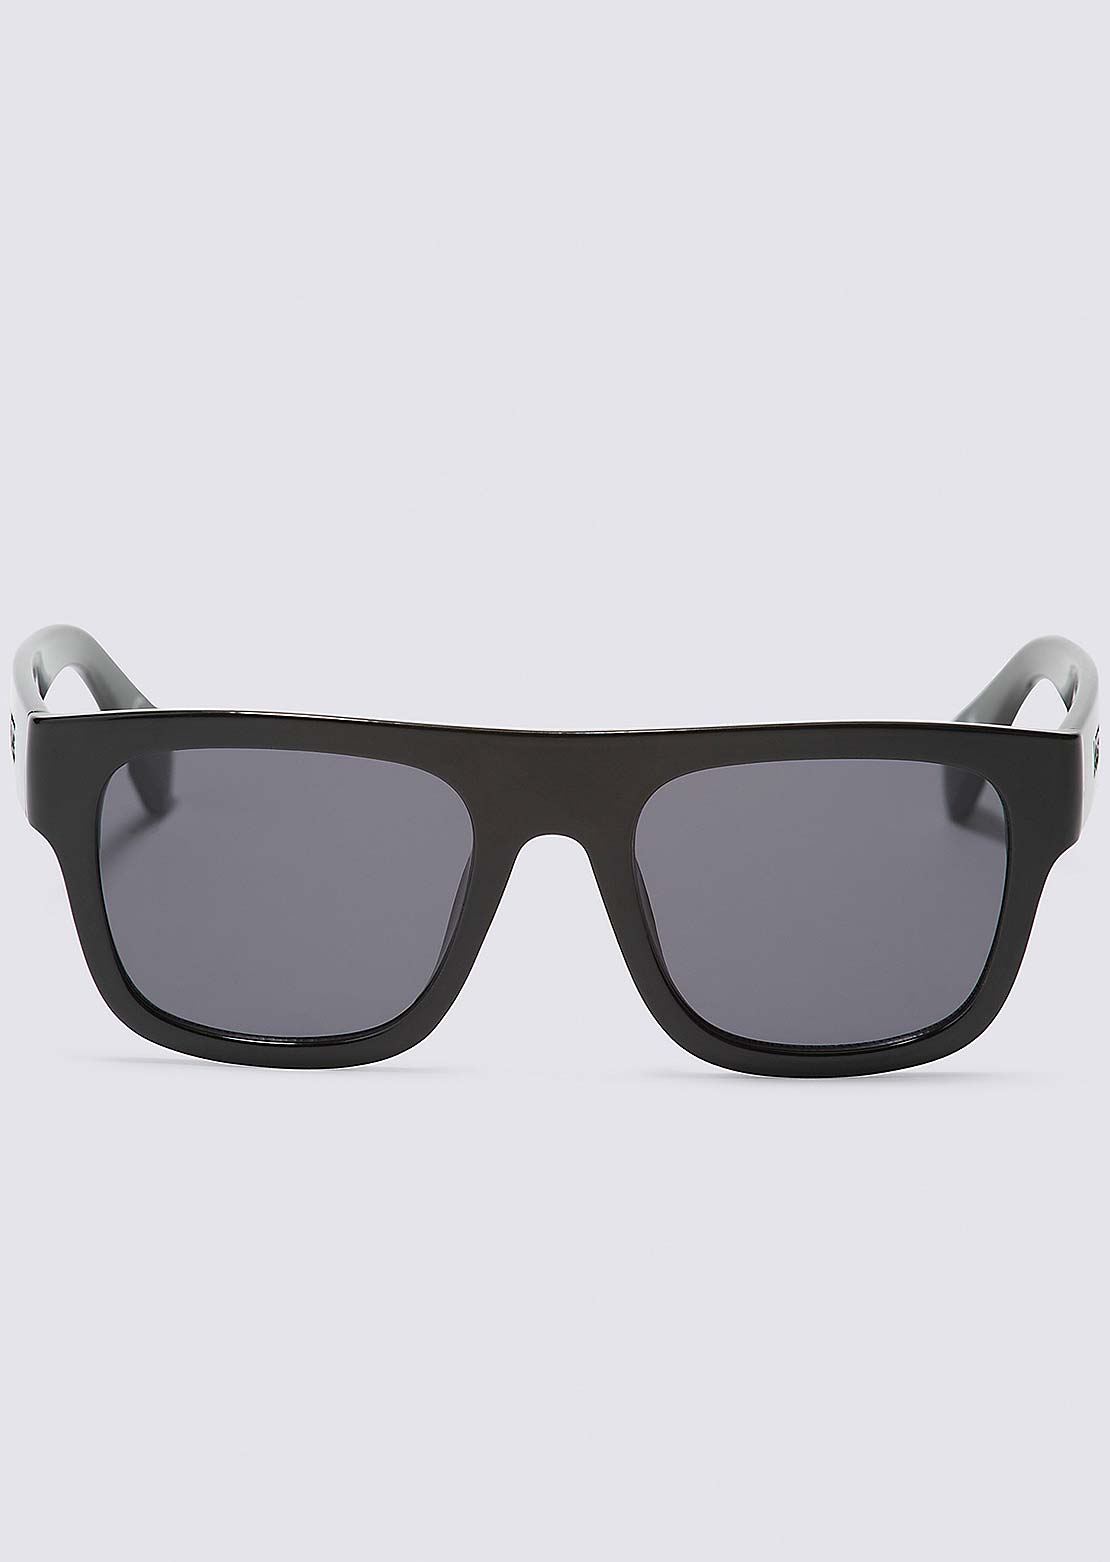 Vans Unisex Squared Off Shades Sunglasses Black